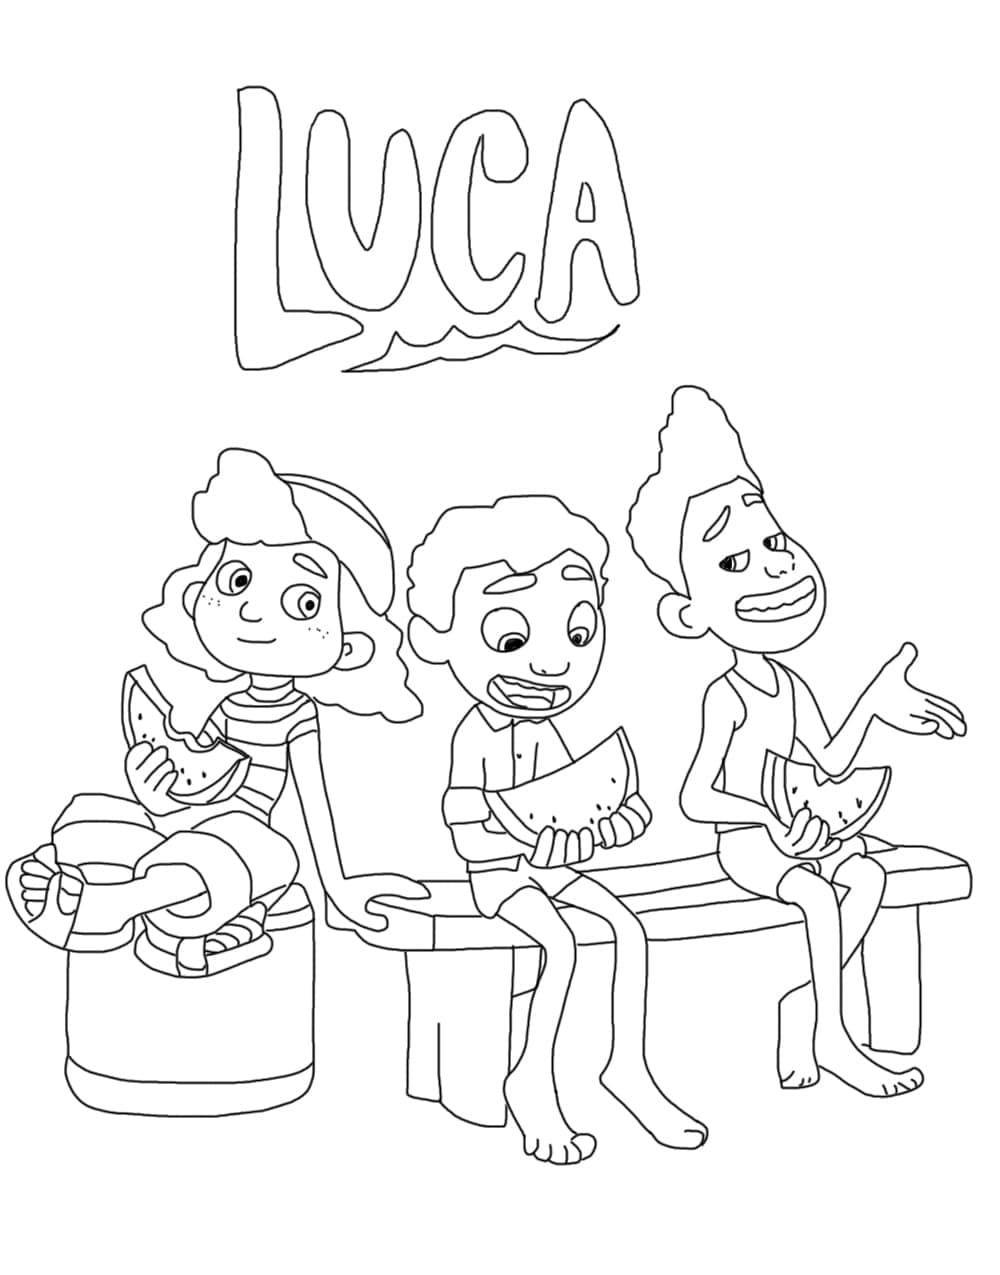 Luca med venner Tegninger til Farvelægning